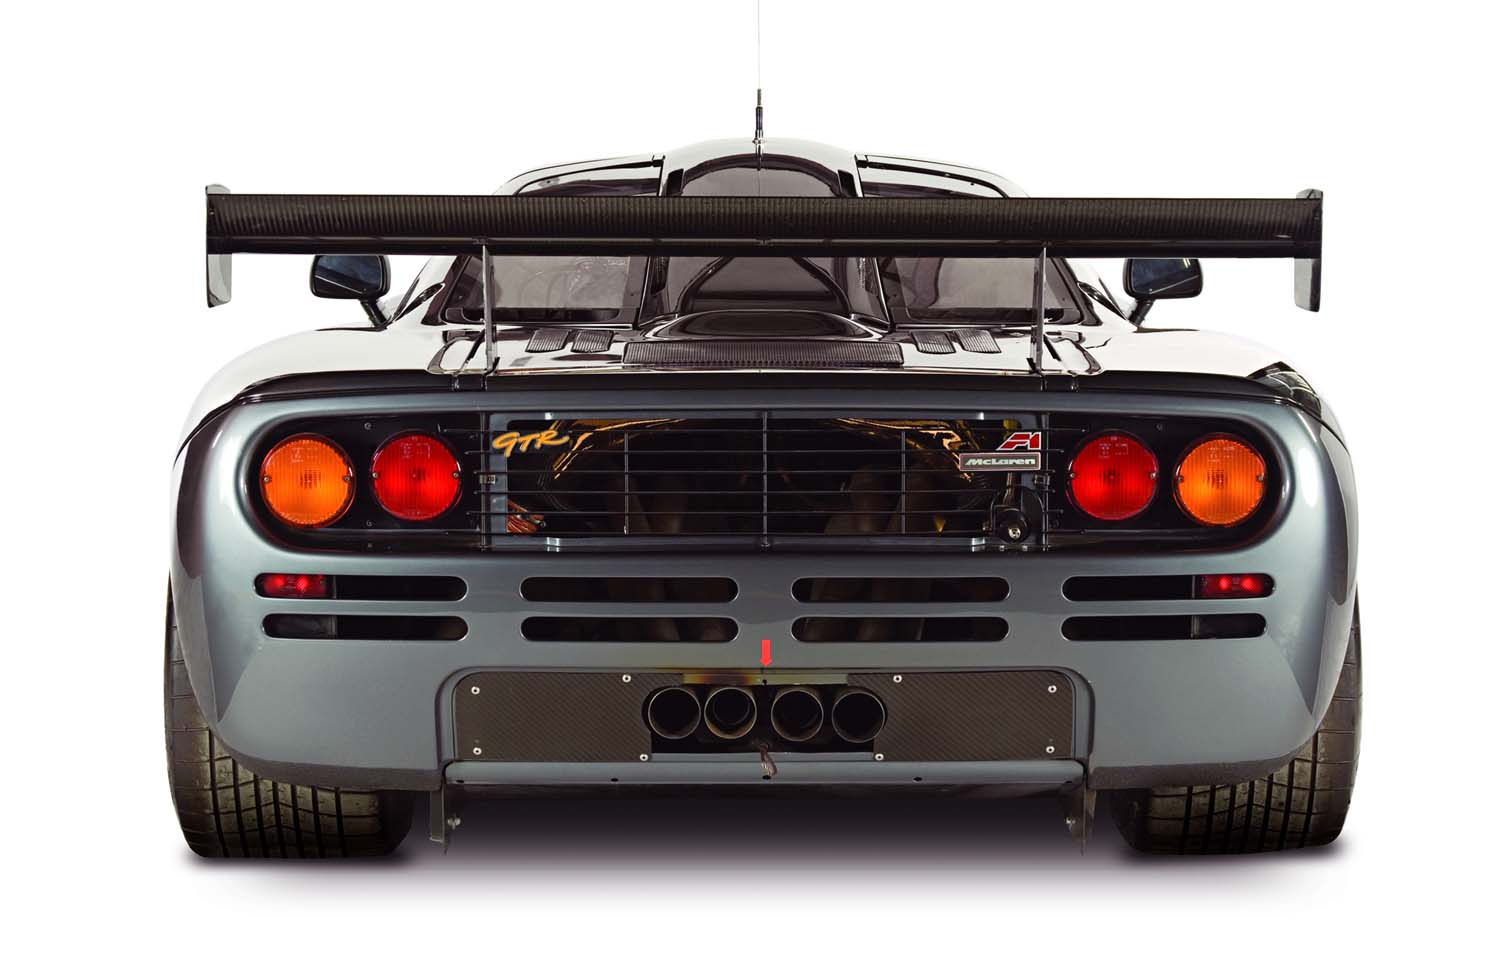 The 1995 Le Mans-winning McLaren F1 GTR (Image: McLaren Automotive Limited)